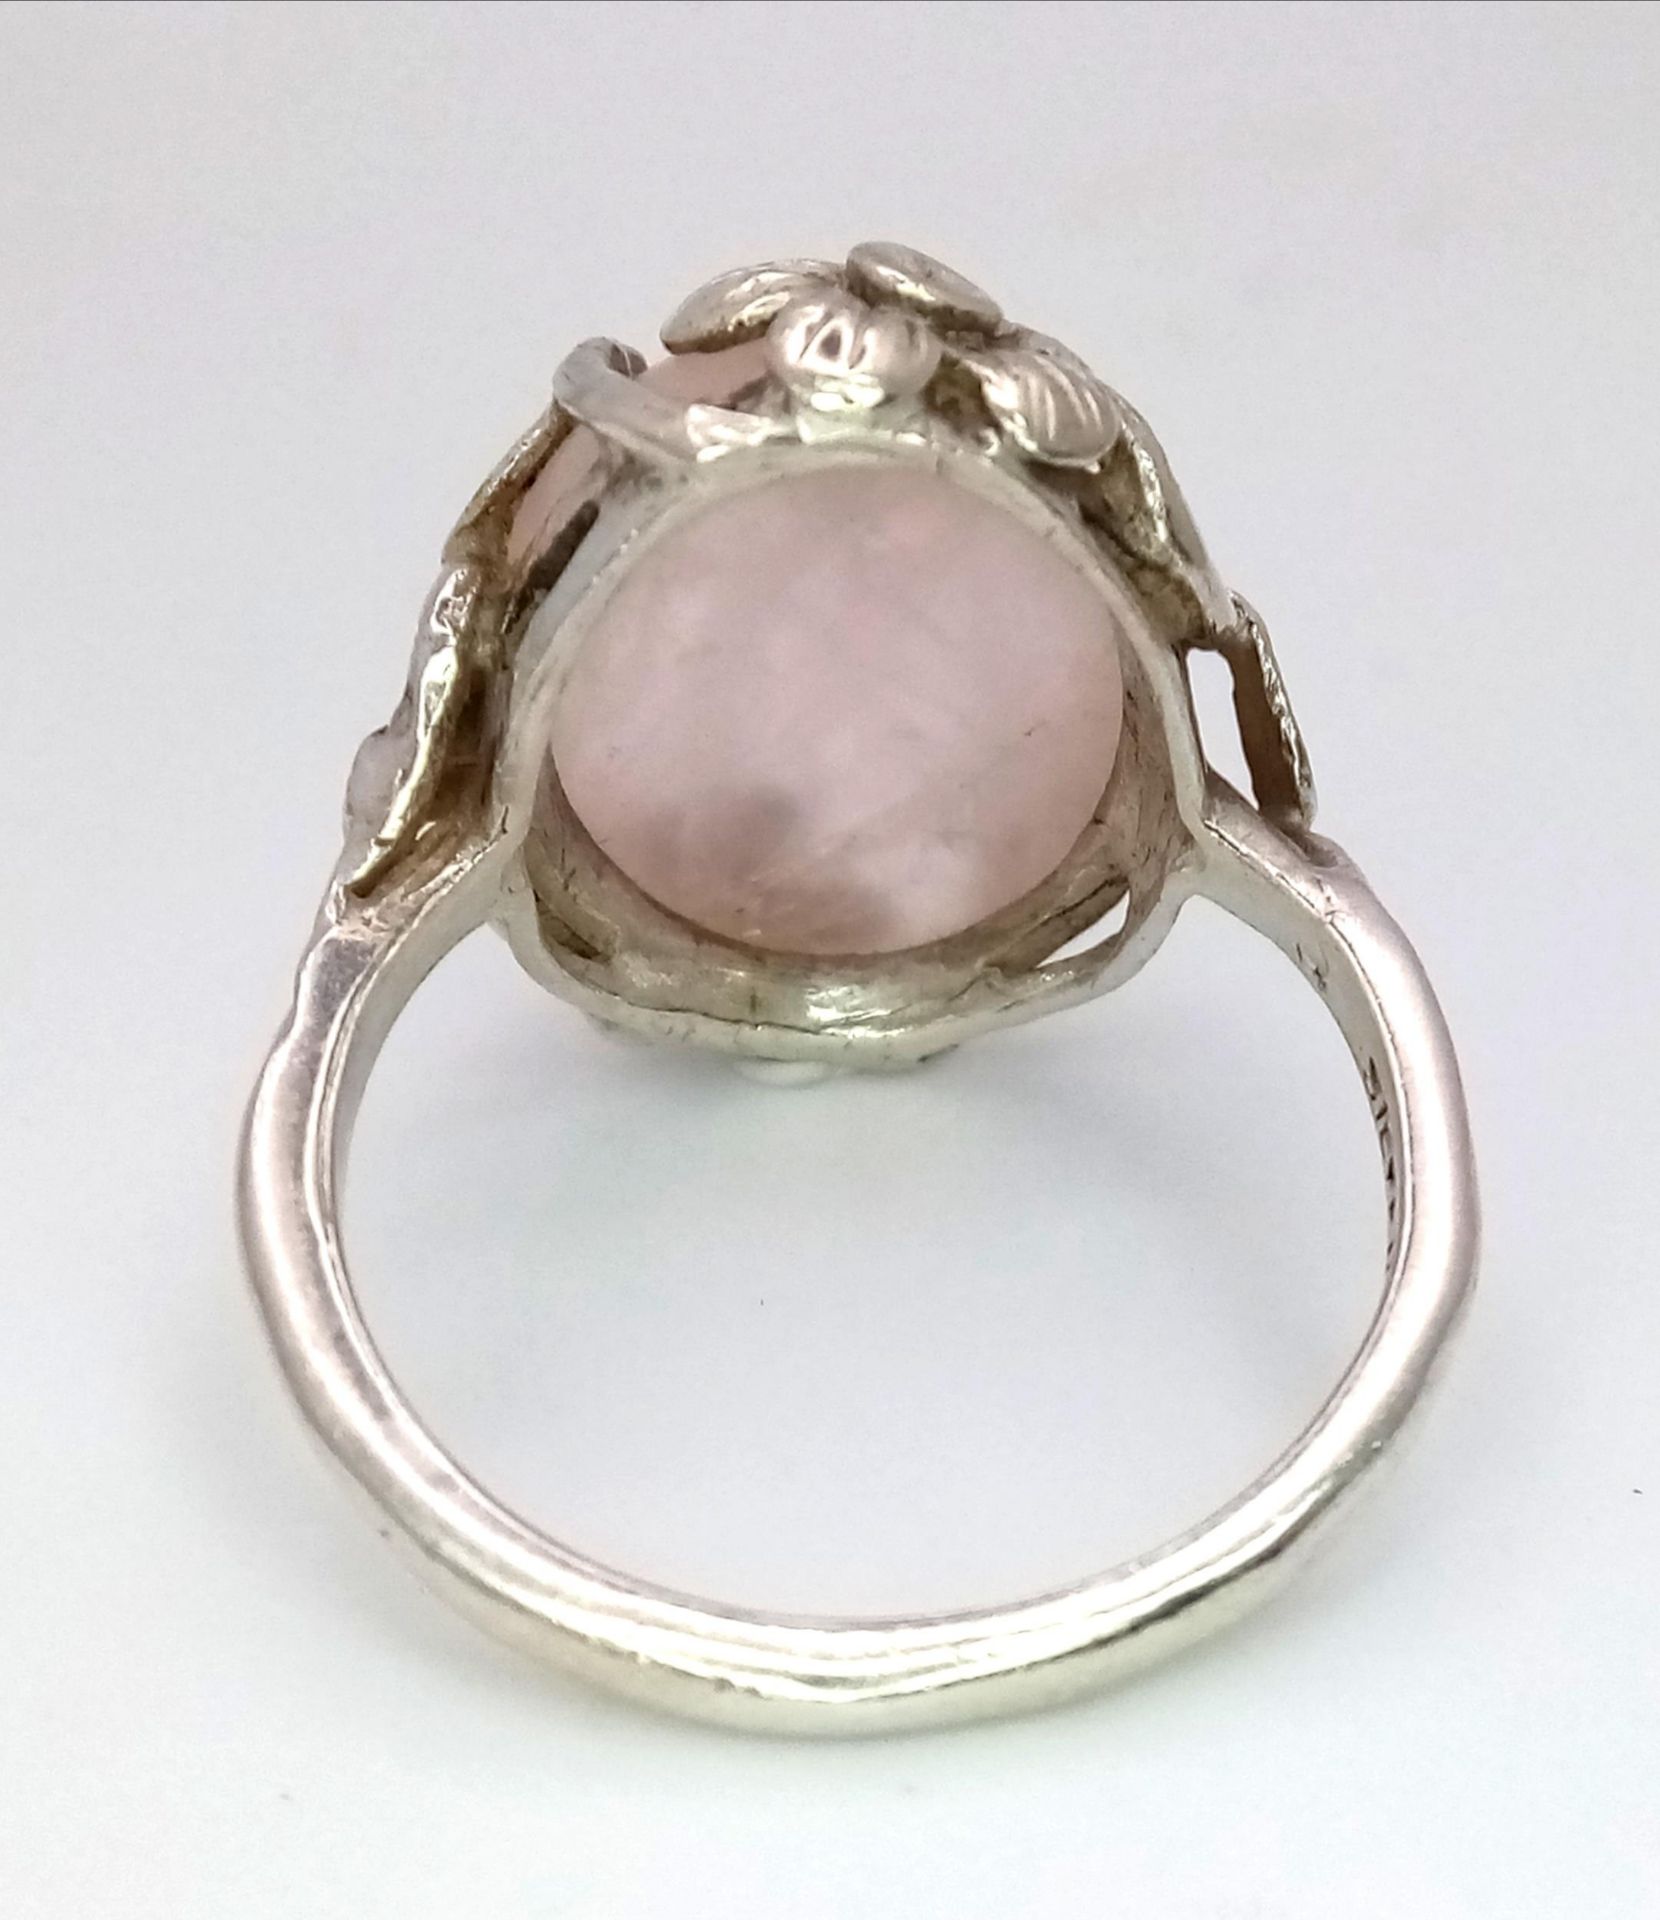 A Vintage, Ornate Flower Design Mounted, Rose Quartz Cabochon Sterling Silver Ring Size R. Set - Image 4 of 5